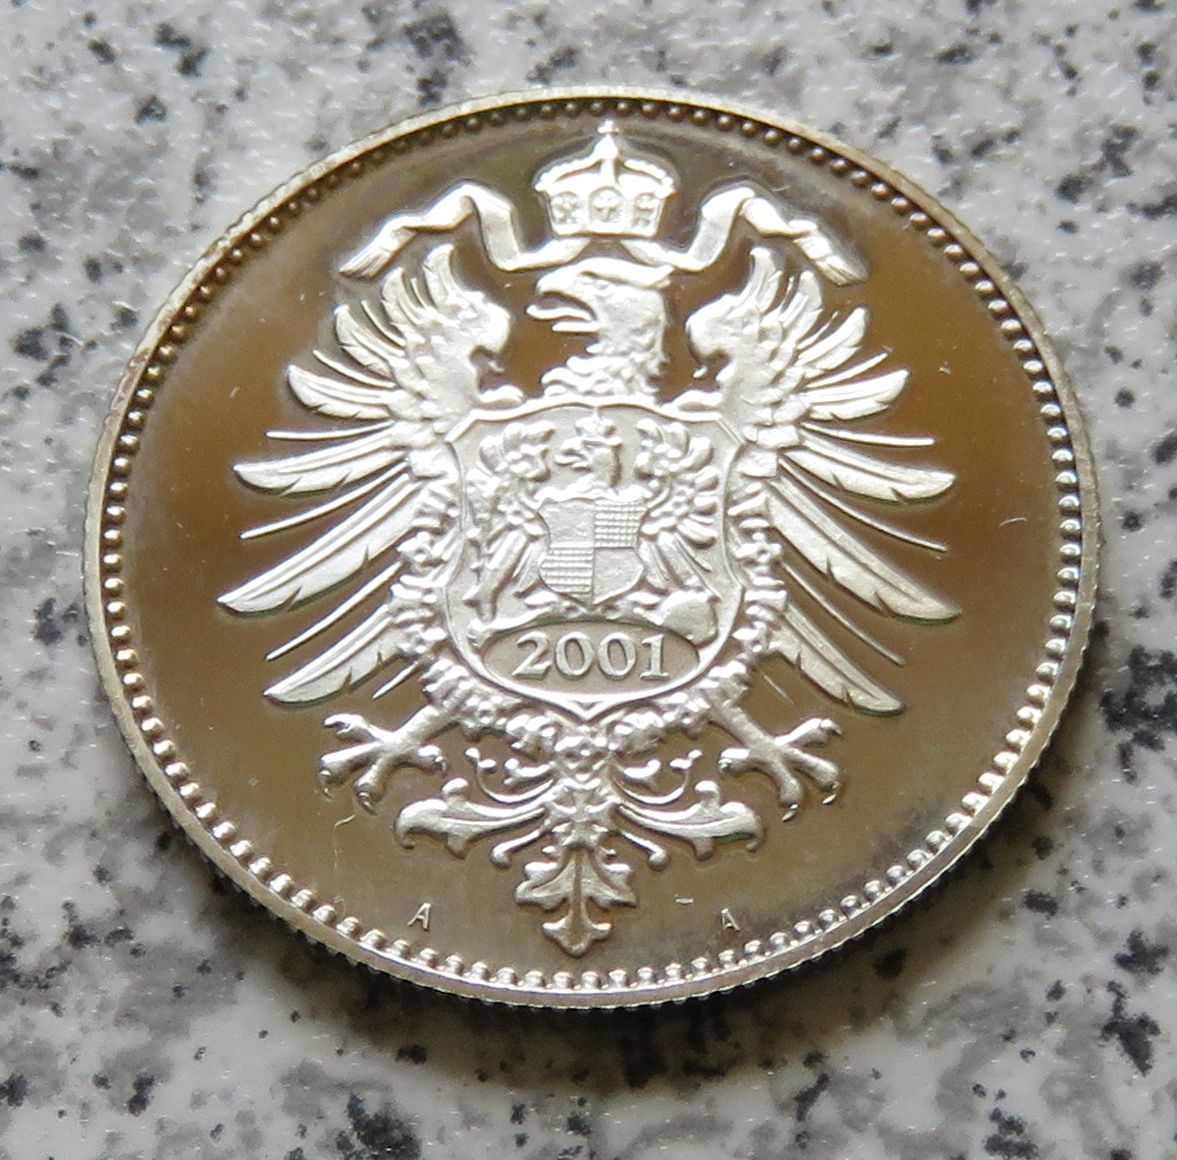  Medaille von 2001/Nachprägung: 1 Mark Kaiserreich 1873 A   